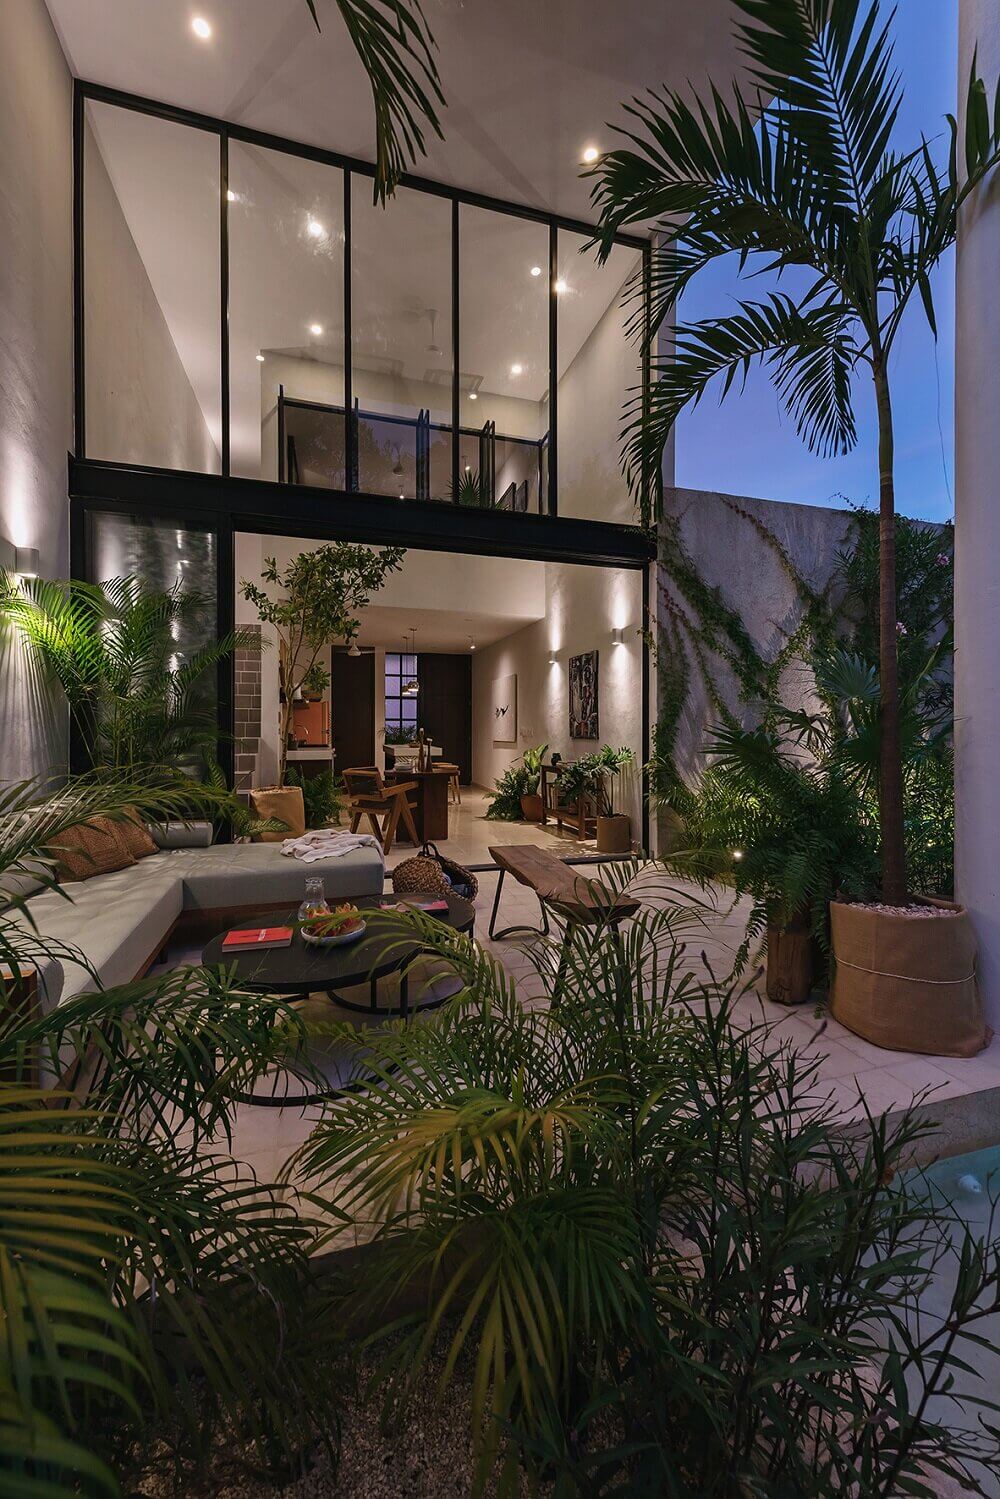 CasaHannah AnArchitecturalVillainMexico TheNordroom14 Casa Hannah | An Architectural Indoor/Outdoor Villa in Mexico